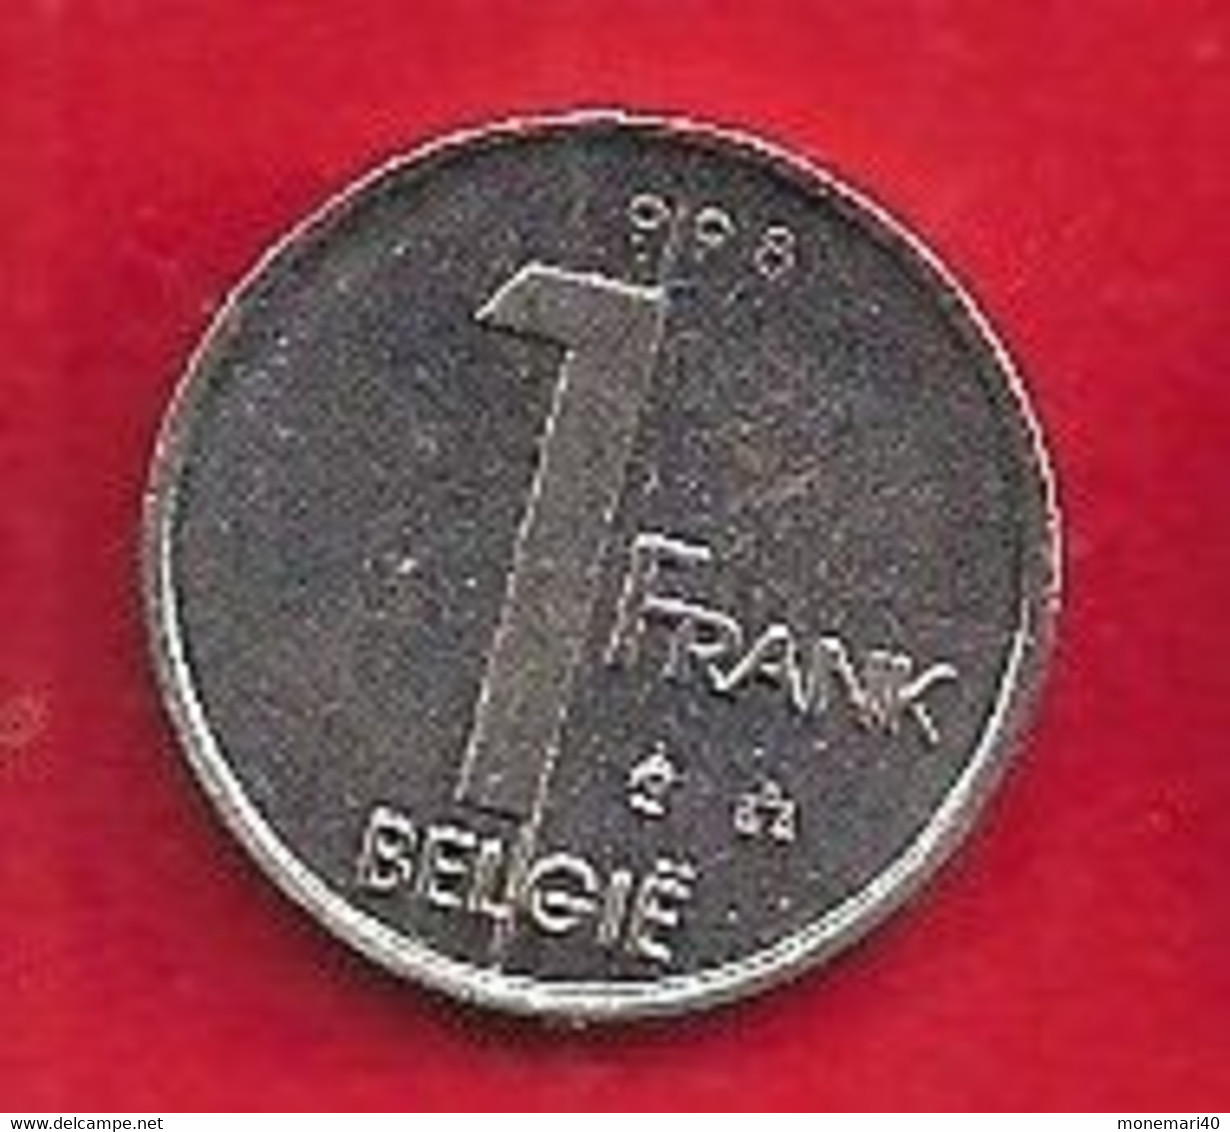 BELGIQUE - 1 FRANC - ALBERT I - 1998. - 1 Frank